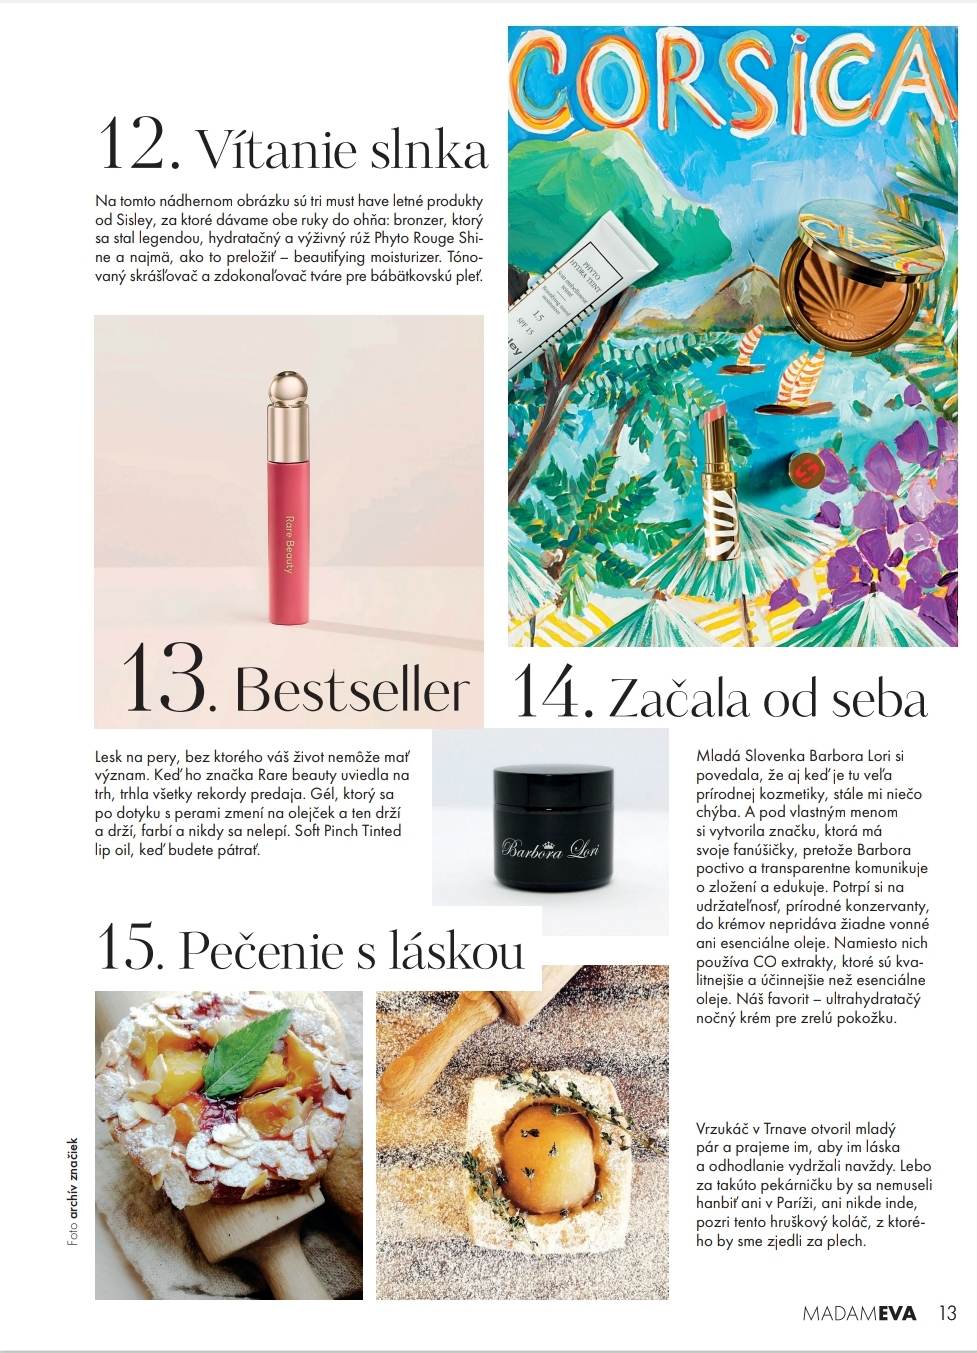 článok v magazíne MADAM EVA, prírodná kozmetika Barbora Lori medzi HOT 15 najzaujímavejšie a overené trendy